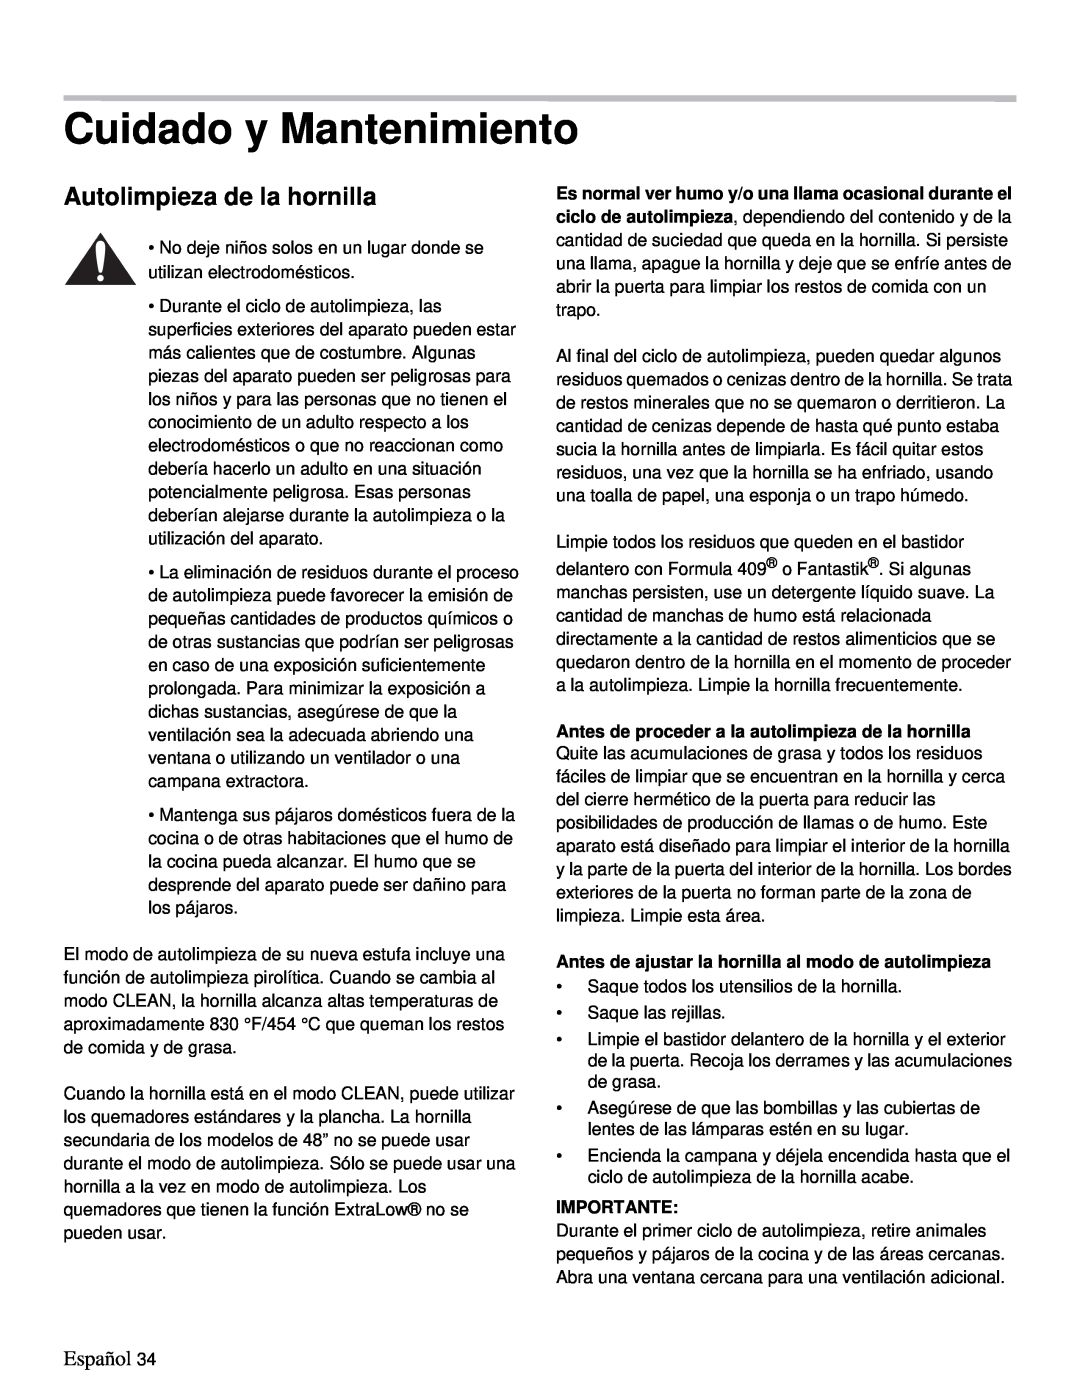 Thermador PRD48, PRD36 manual Cuidado y Mantenimiento, Autolimpieza de la hornilla, Español, Importante 